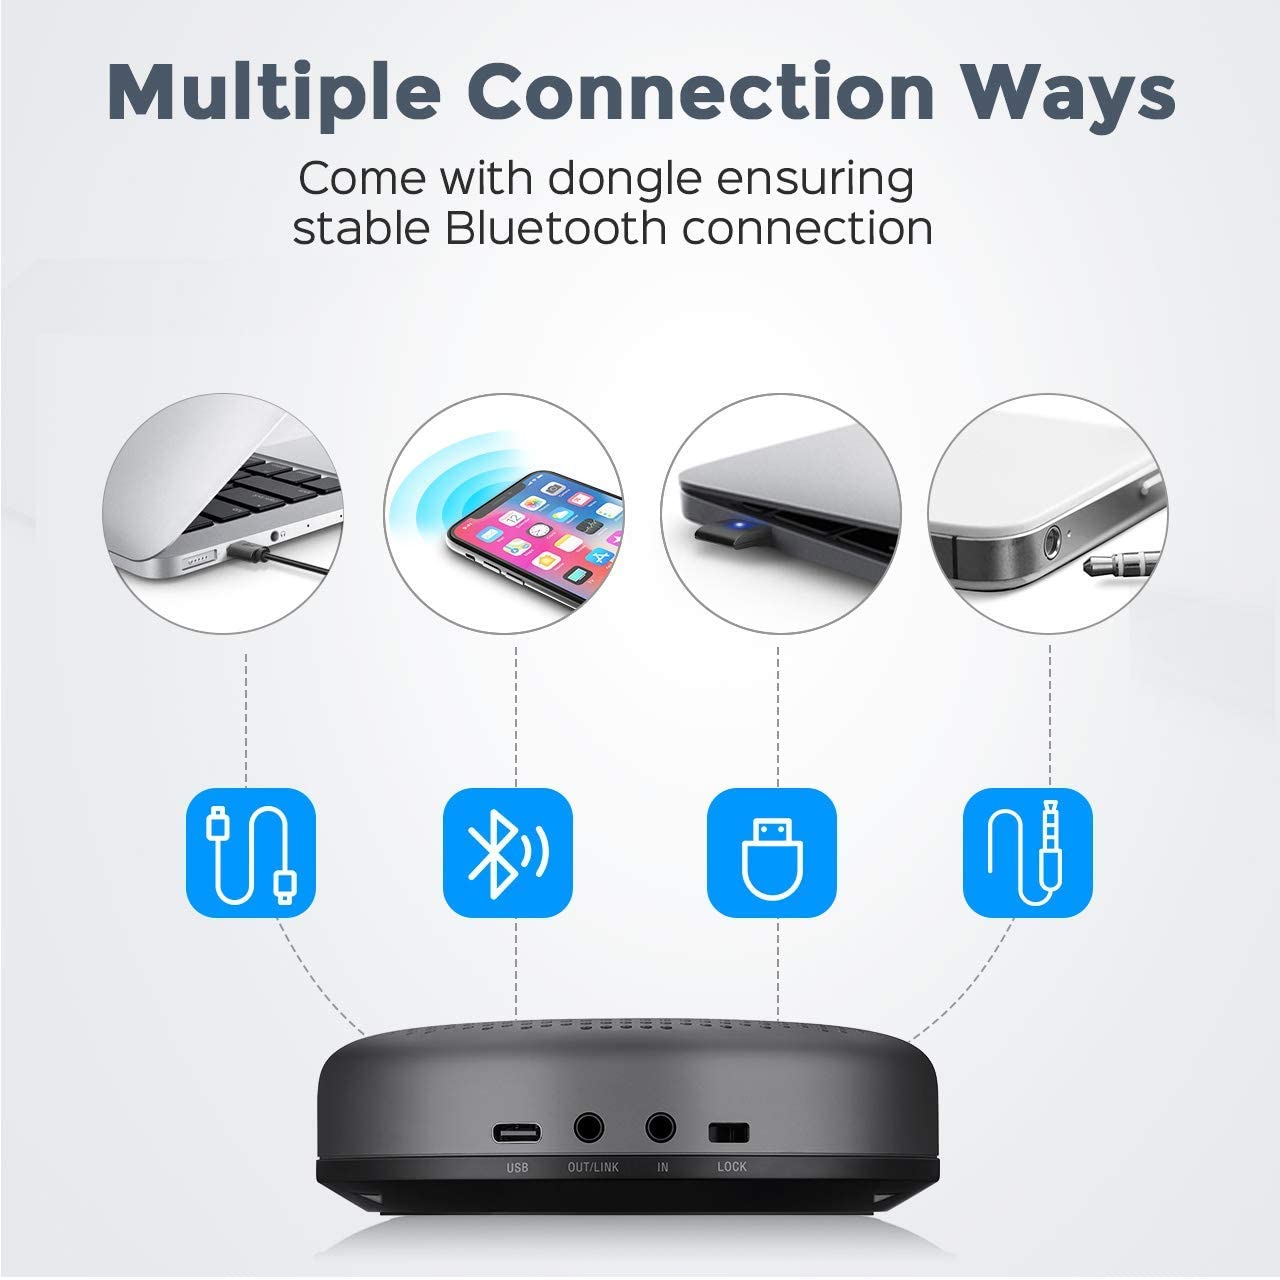 eMeet – Bocina Bluetooth Luna con micrófono con algoritmo de reducción de ruido mejorado, cadena de margarita, con Dongle Altavoz USB para la oficina en casa, recepción de voces de 360° para 8 personas